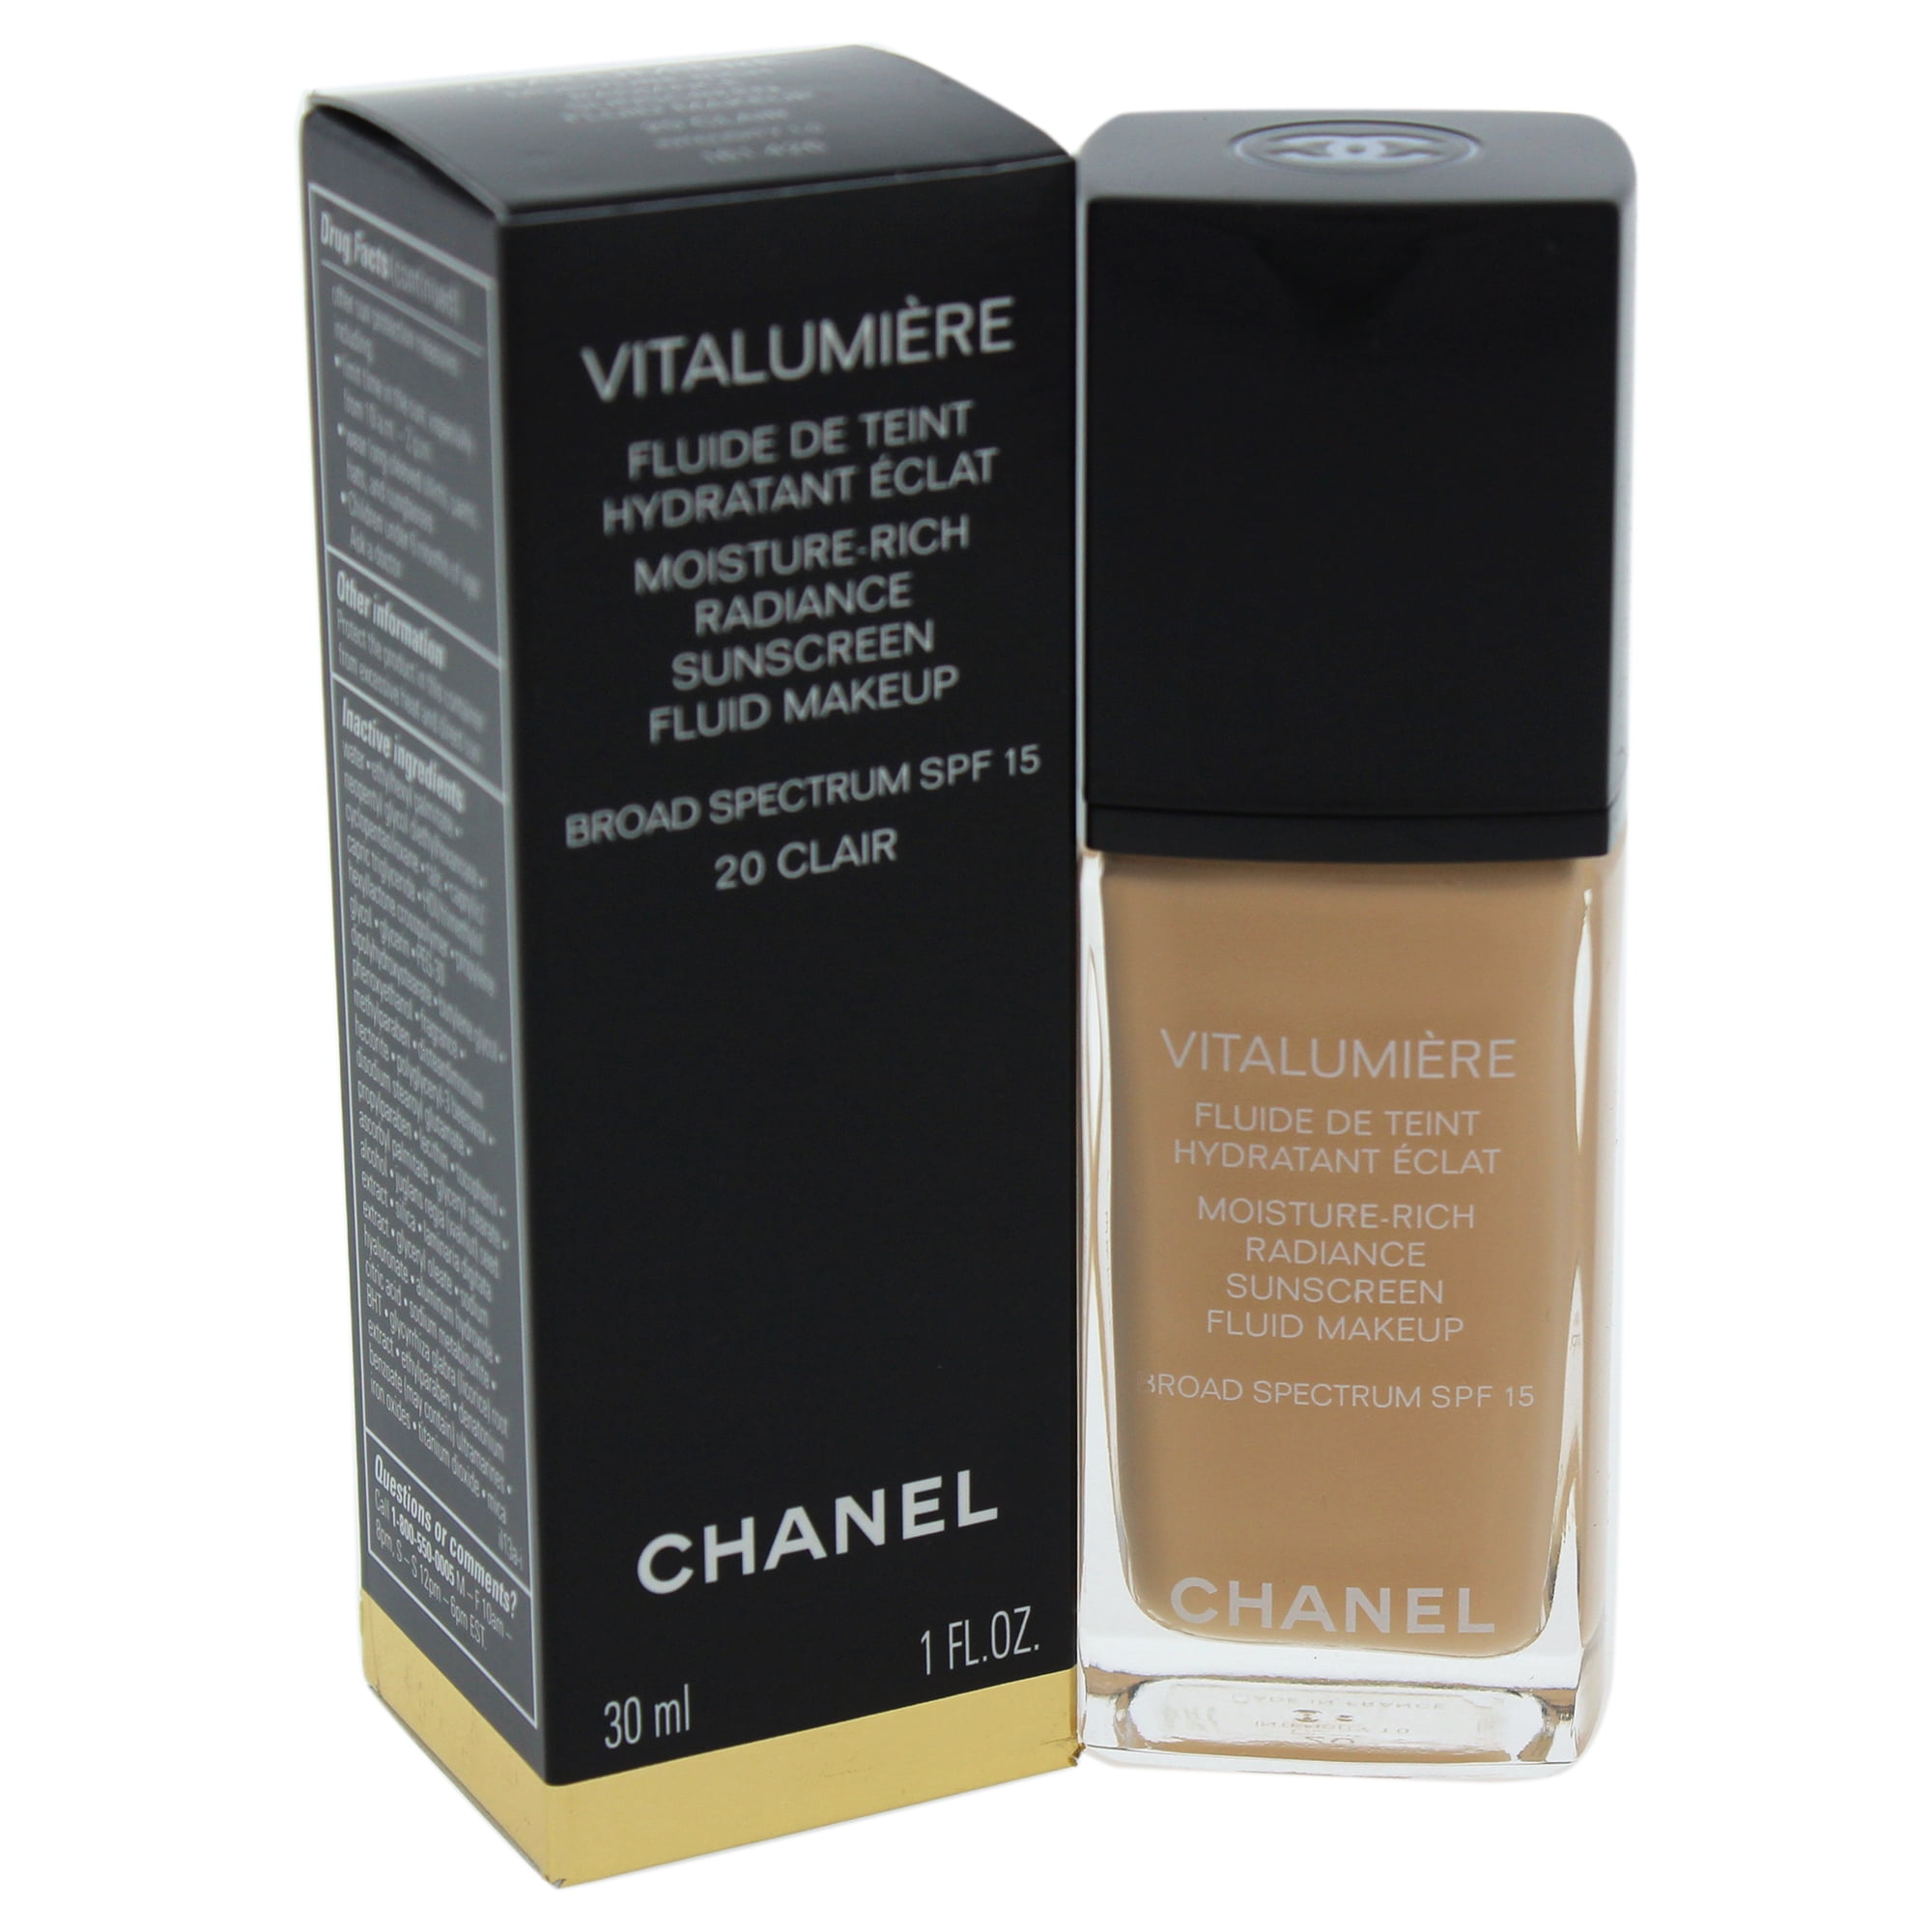 CHANEL Vitalumiere Moisture-Rich Radiance Sunscreen Fluid Makeup SPF 15 -  Reviews